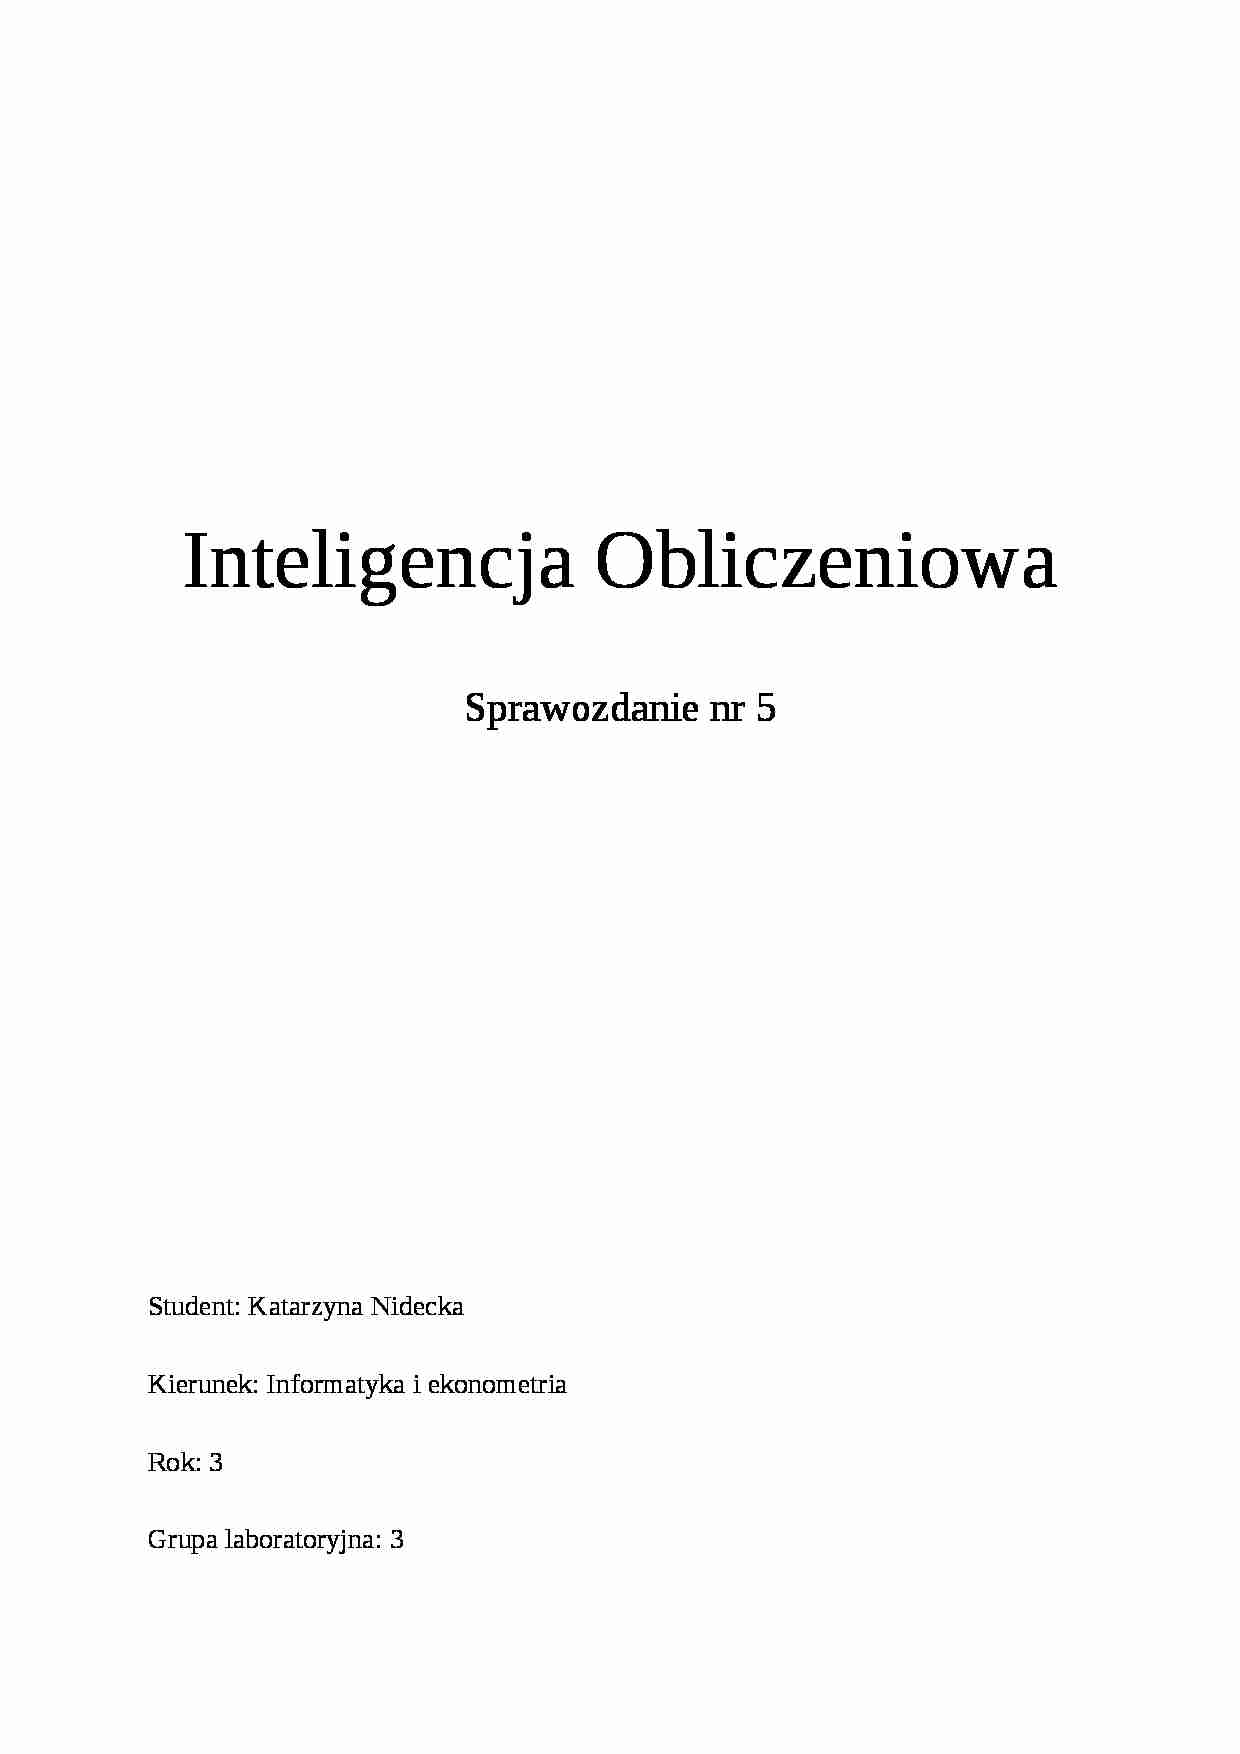 Inteligencja Obliczeniowa -Sprawozdanie nr 5 - strona 1